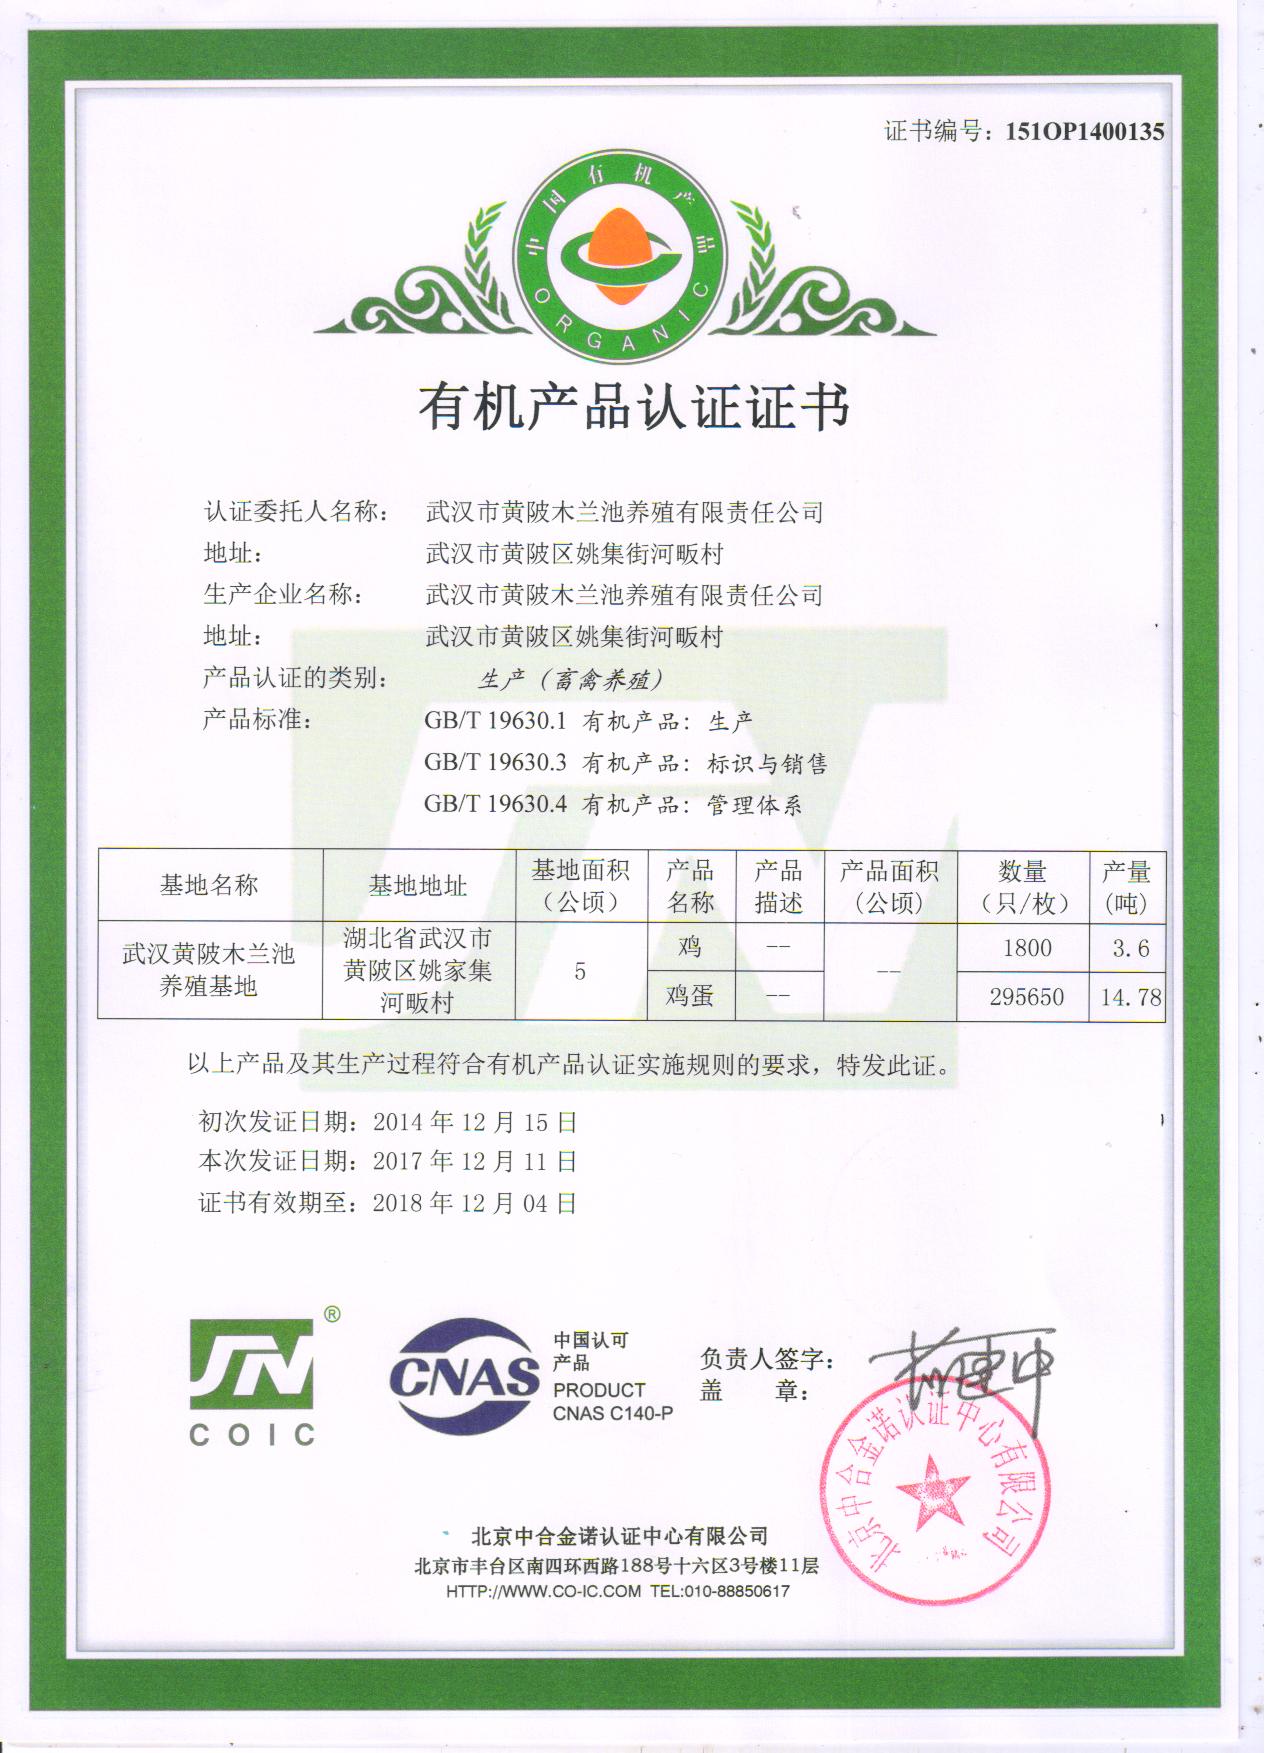 武汉黄陂木兰池养殖基地有机产品认证证书